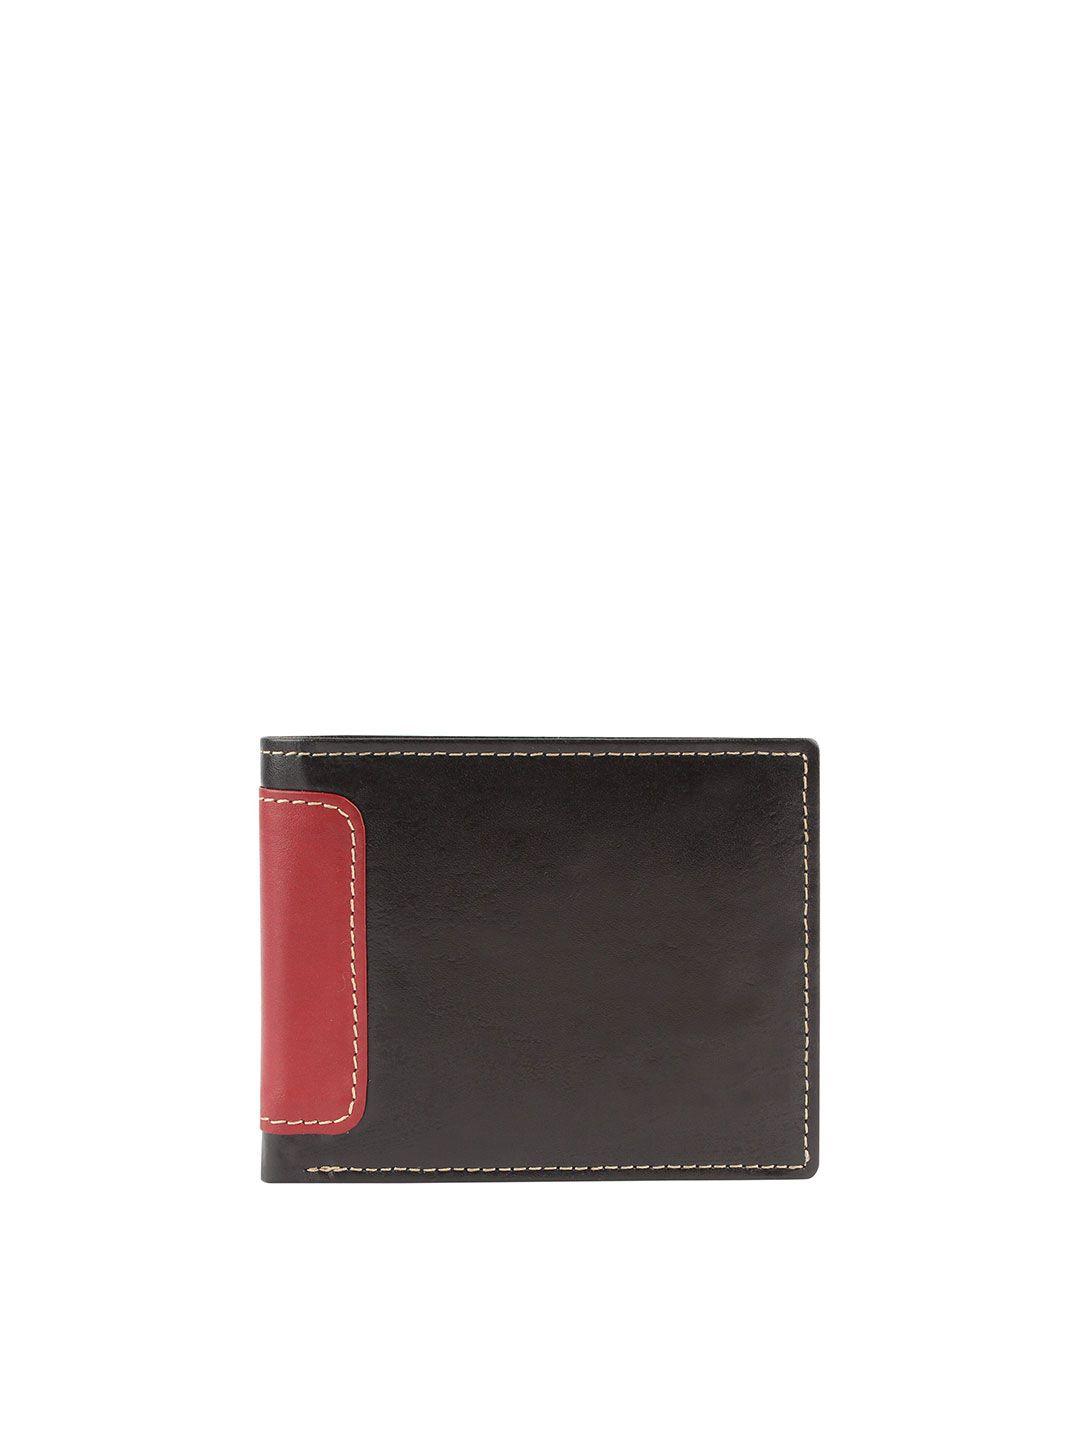 designer bugs men black & red leather two fold wallet